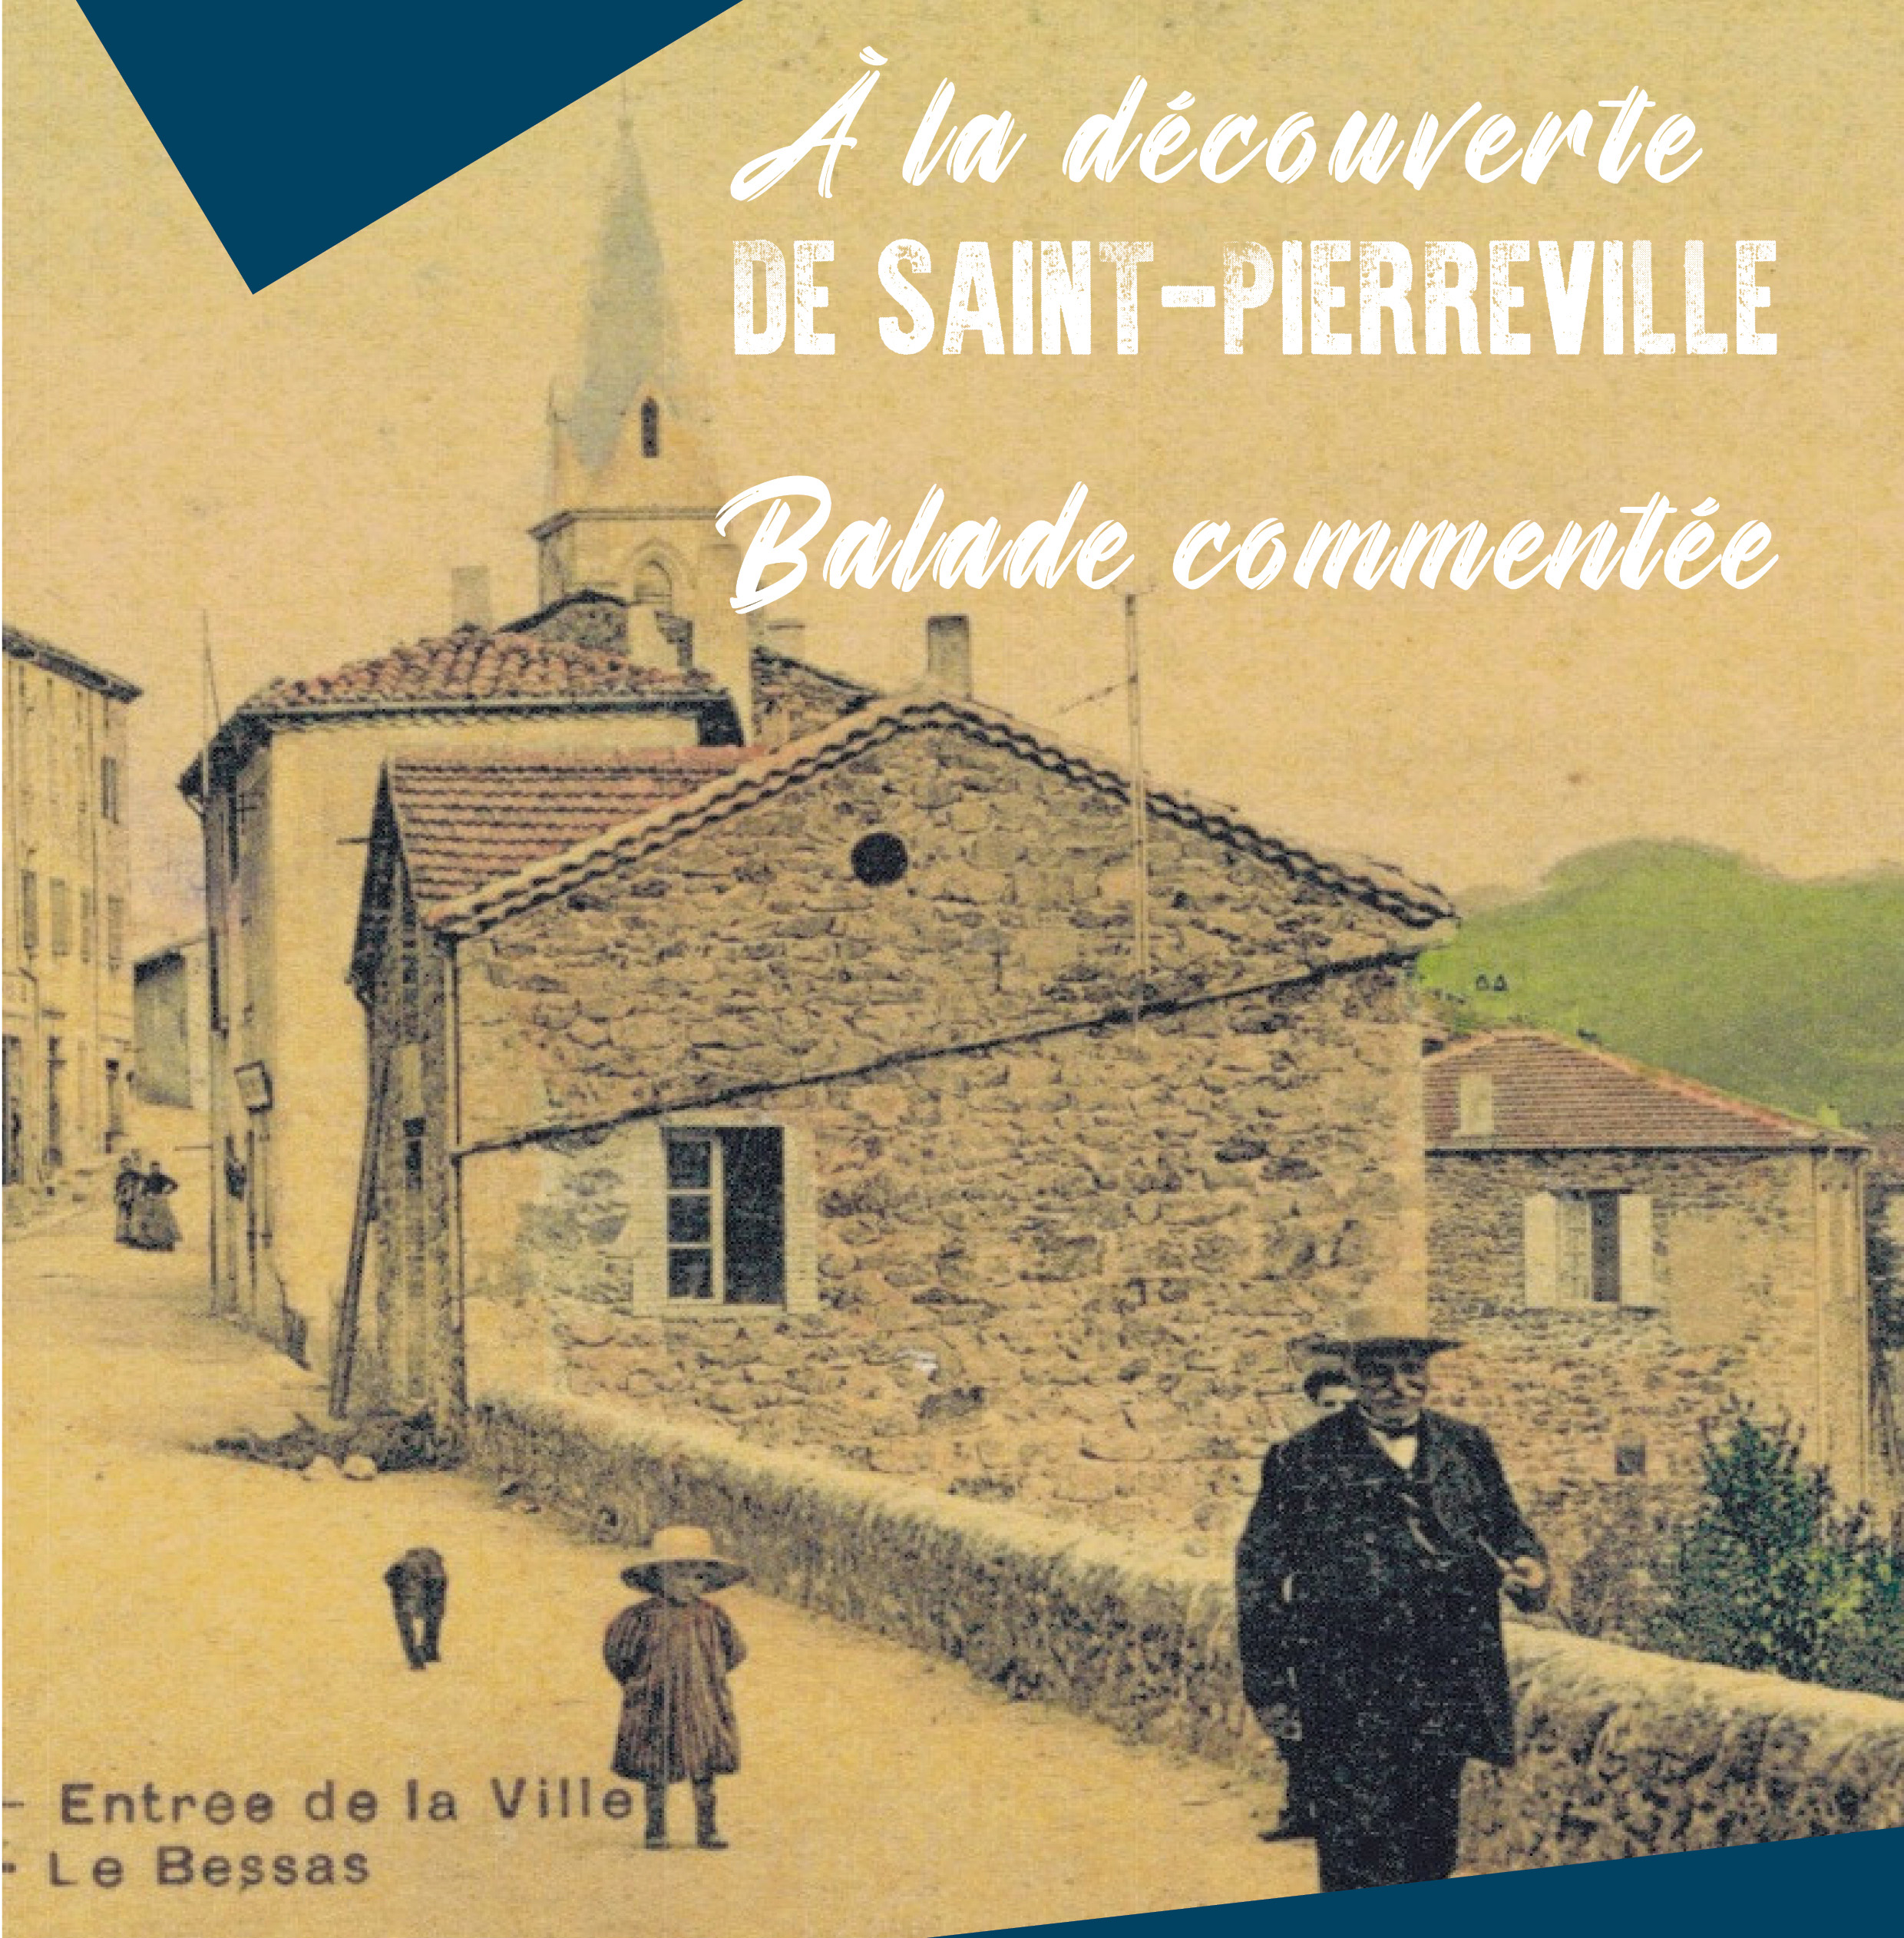 Visite de Saint-Pierreville